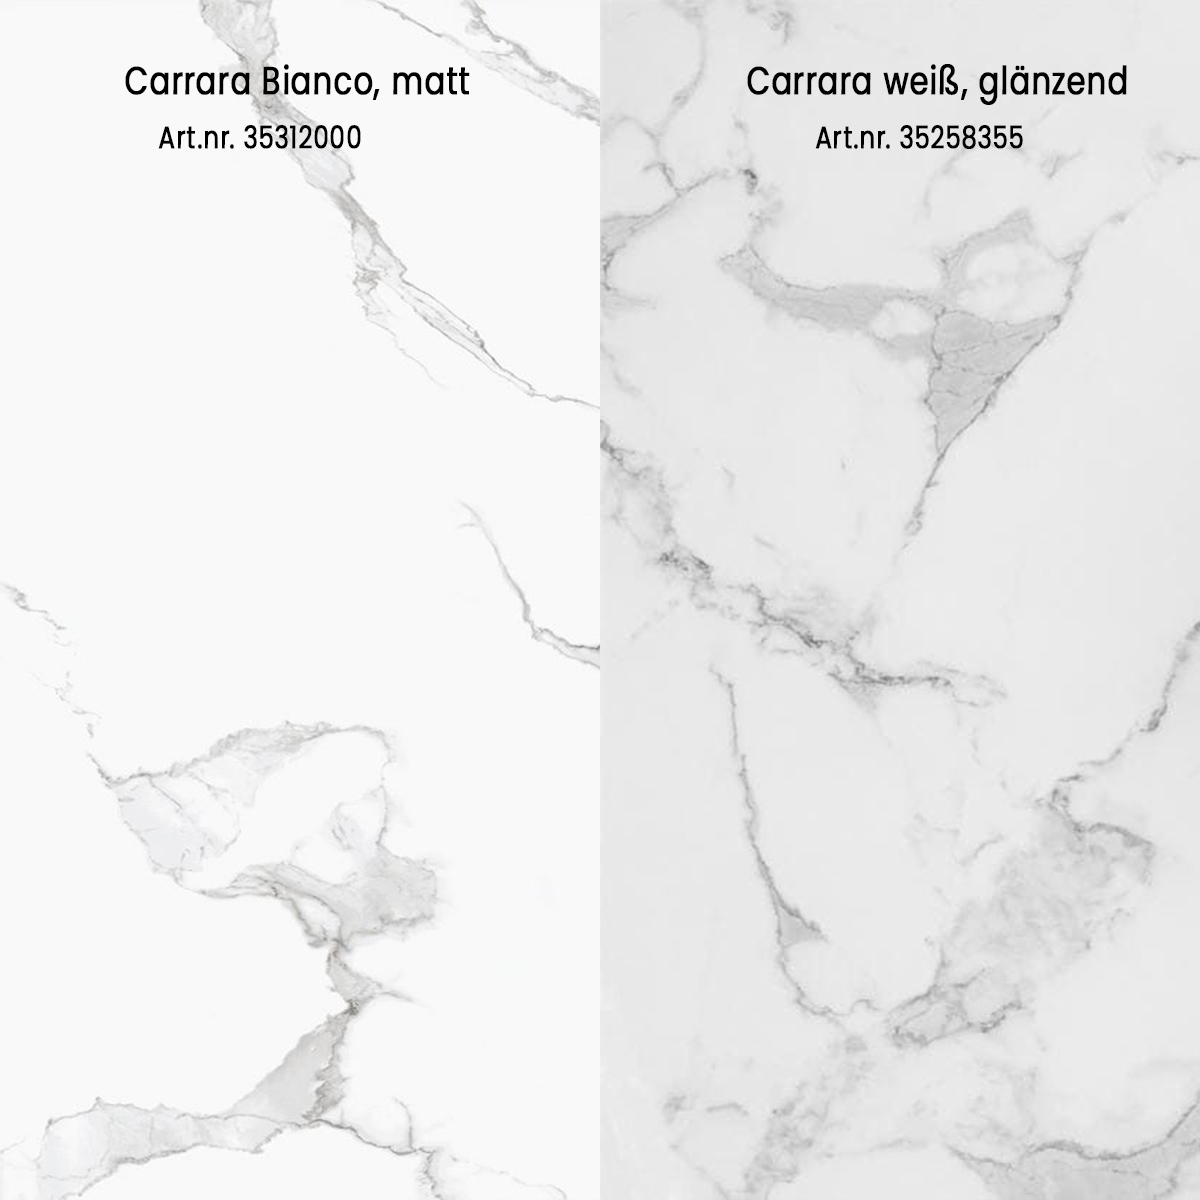 Carrara Bianco matt und Carrara Weiss glaenzend